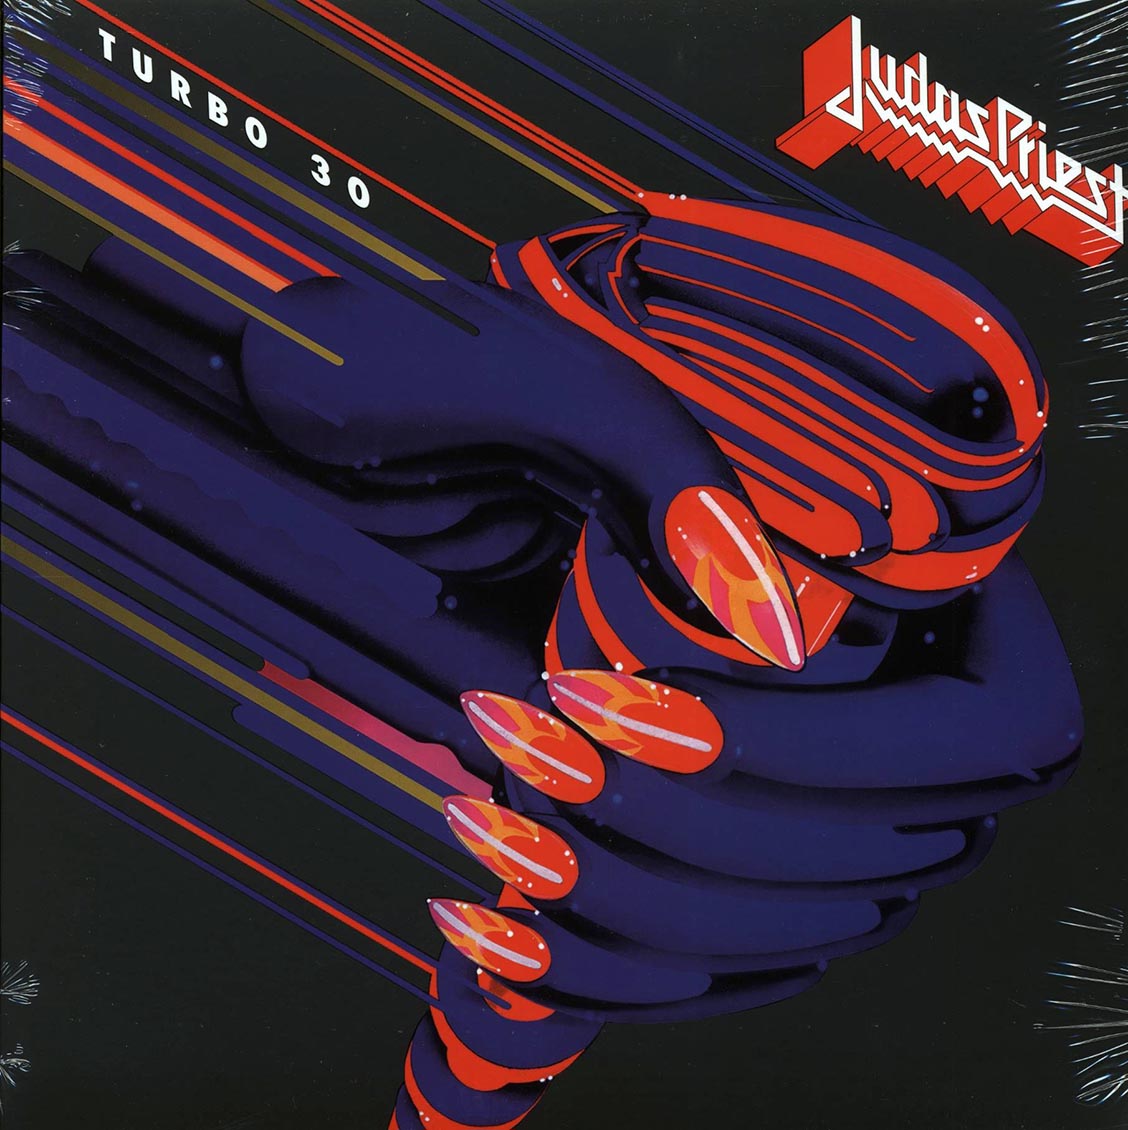 Judas Priest - Turbo 30